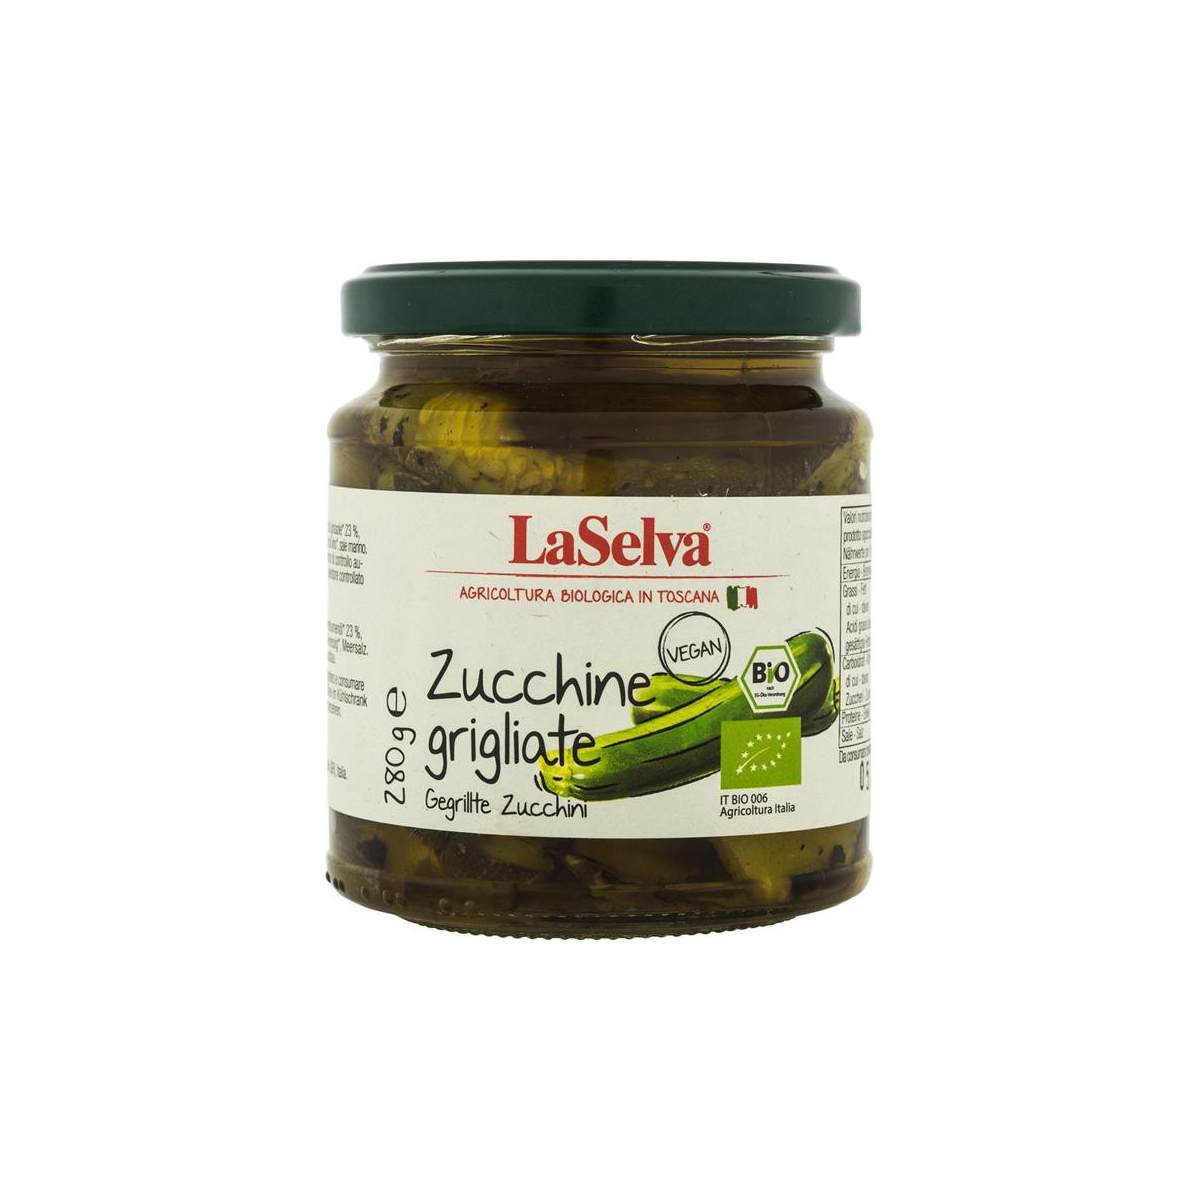 LaSelva - Gegrillte Zucchini in Olivenöl